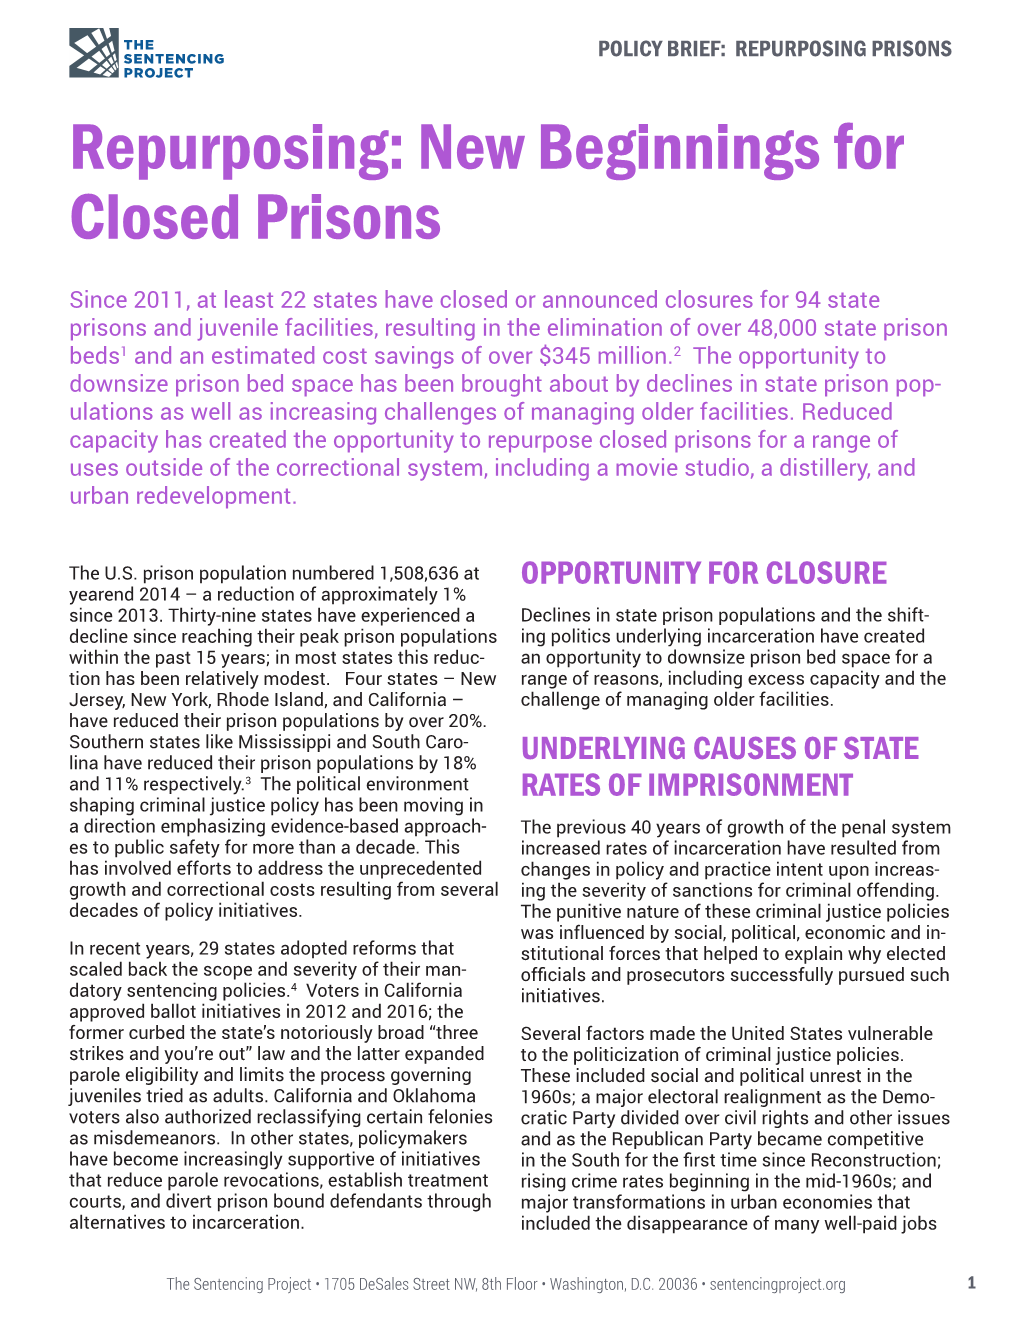 Repurposing: New Beginnings for Closed Prisons